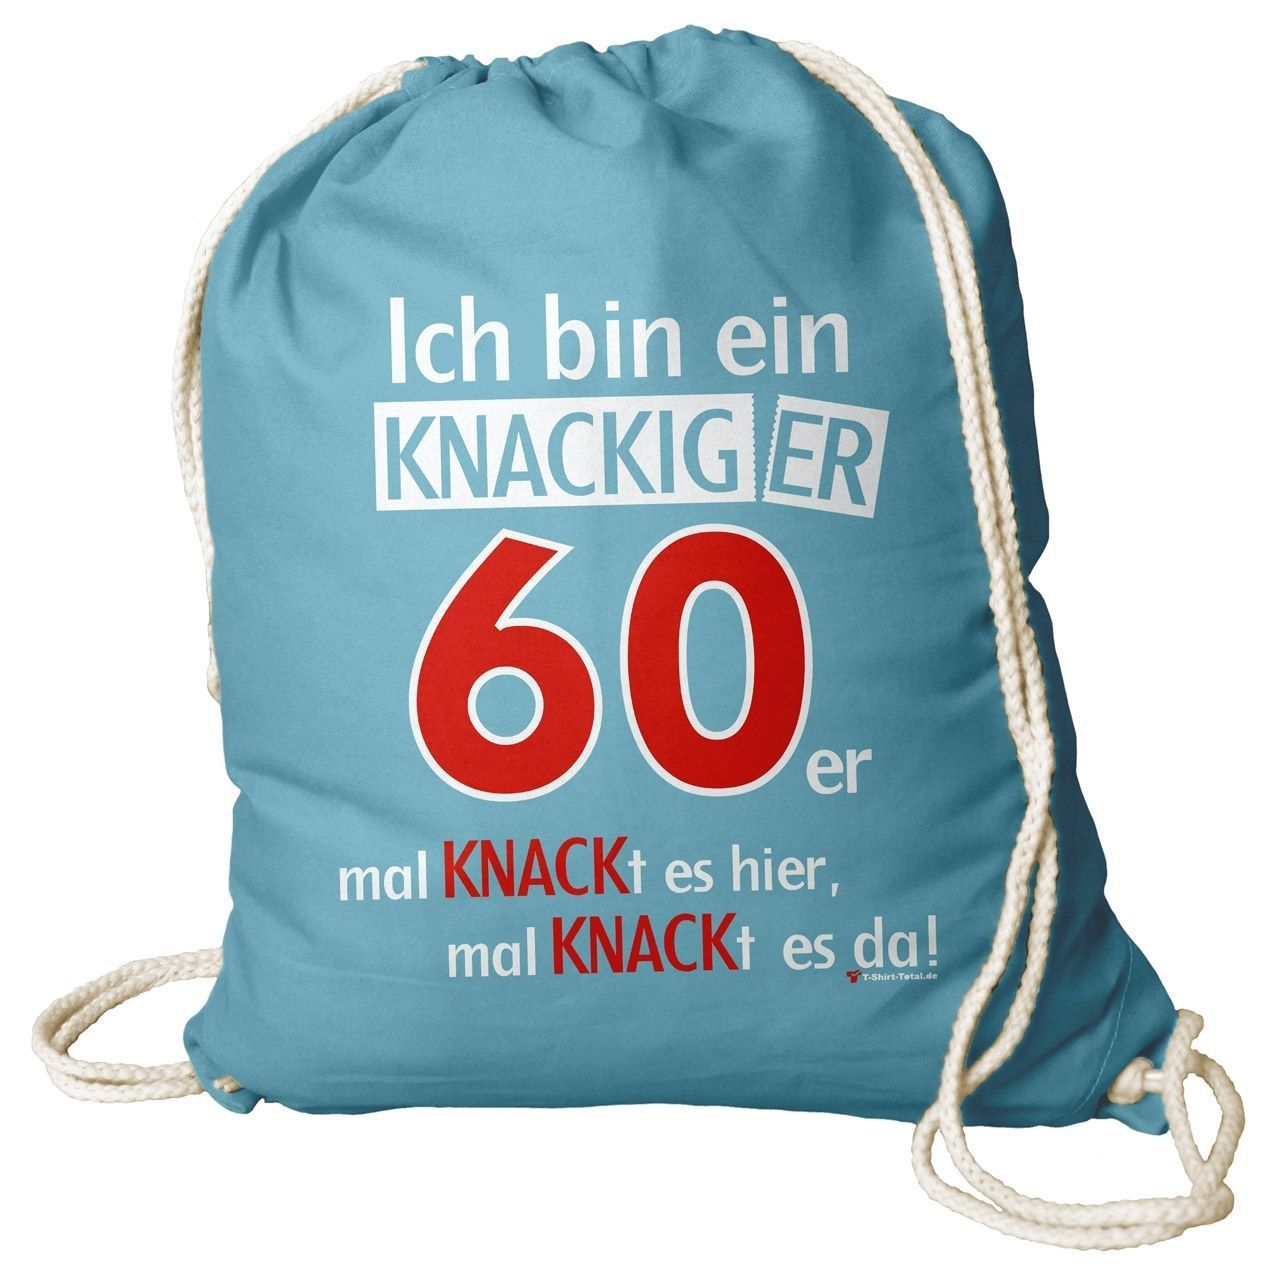 Knackiger 60er Rucksack Beutel türkis